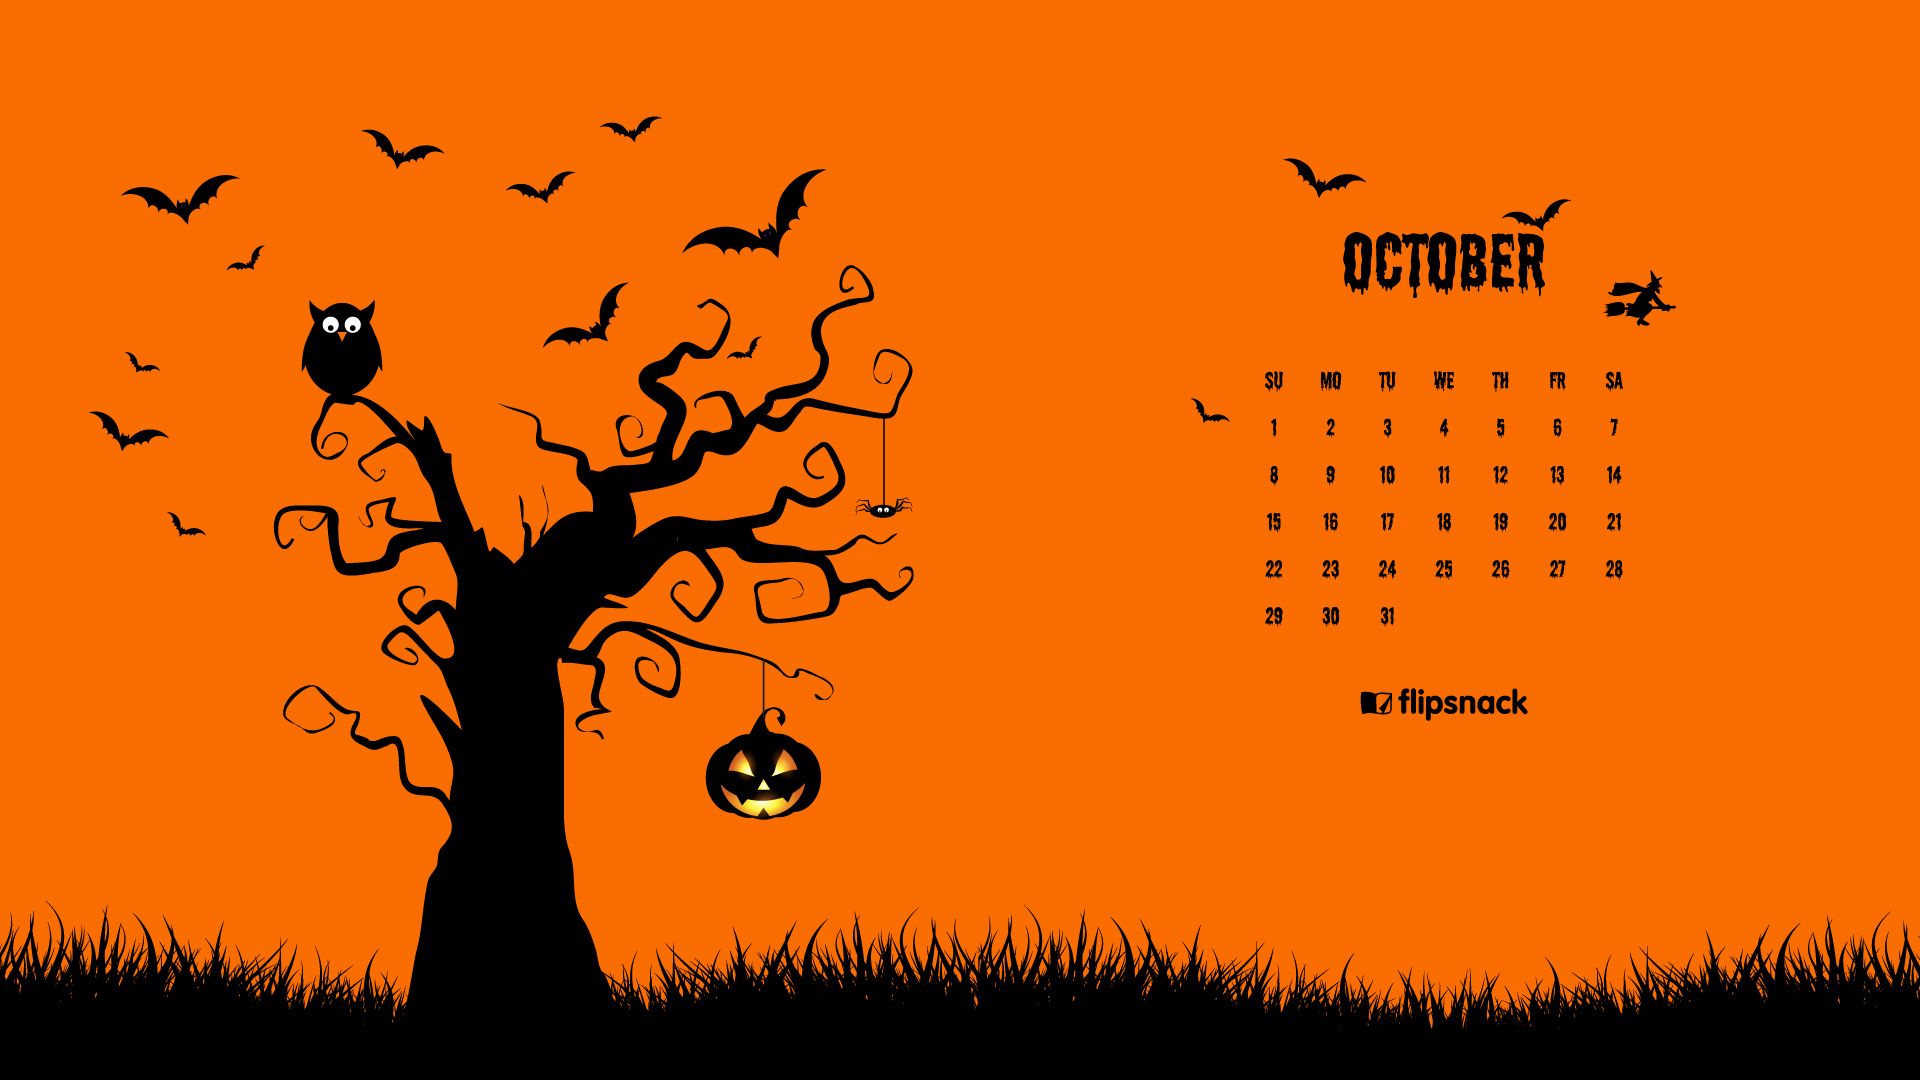 september 2019 desktop calendar wallpaper